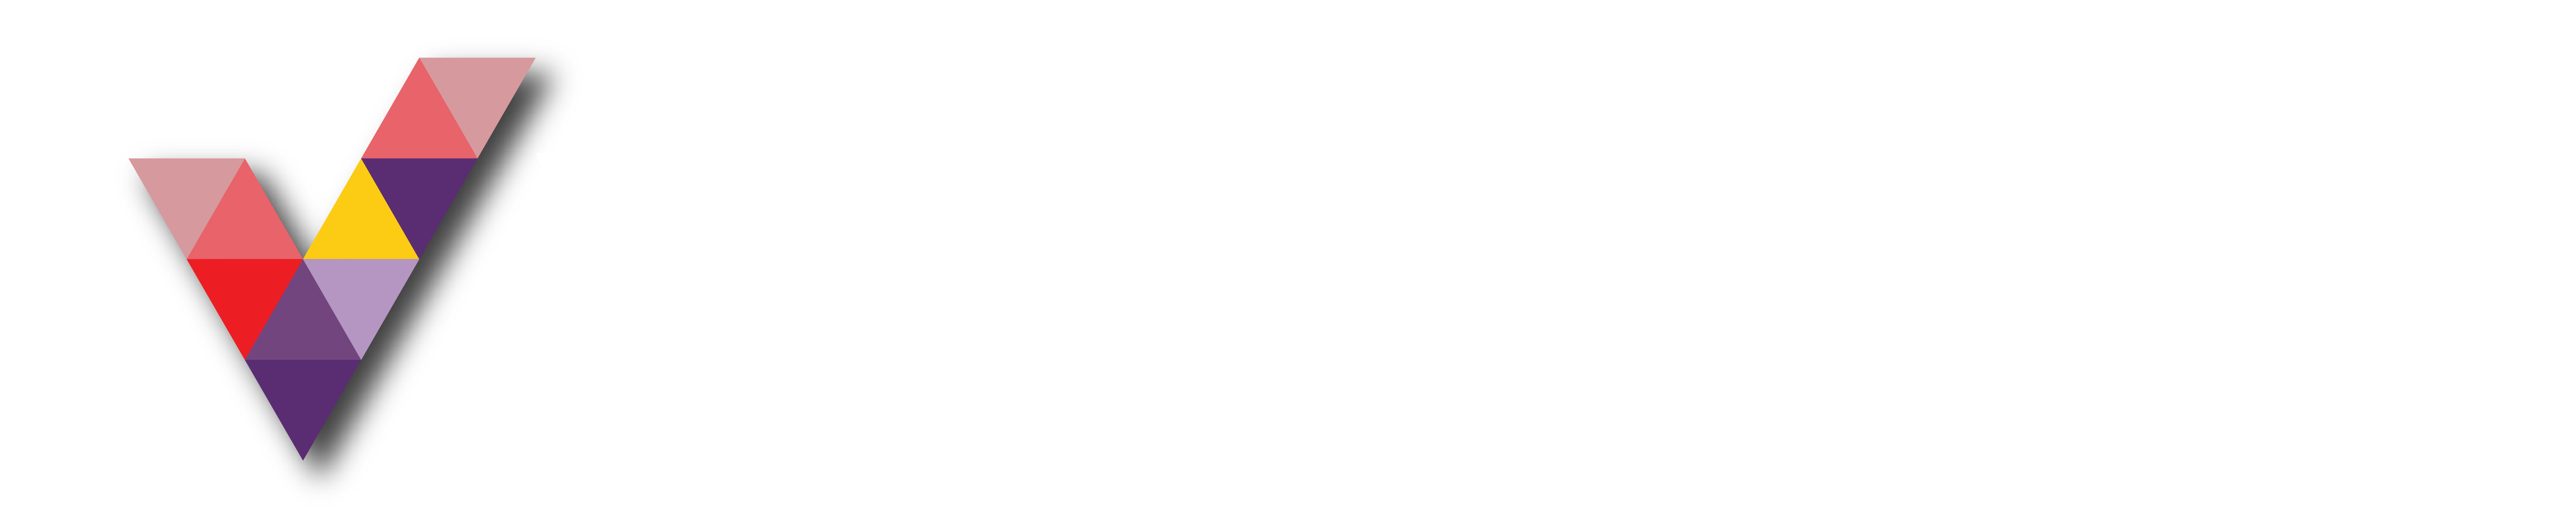 vlanasia-logo-Transparent-04